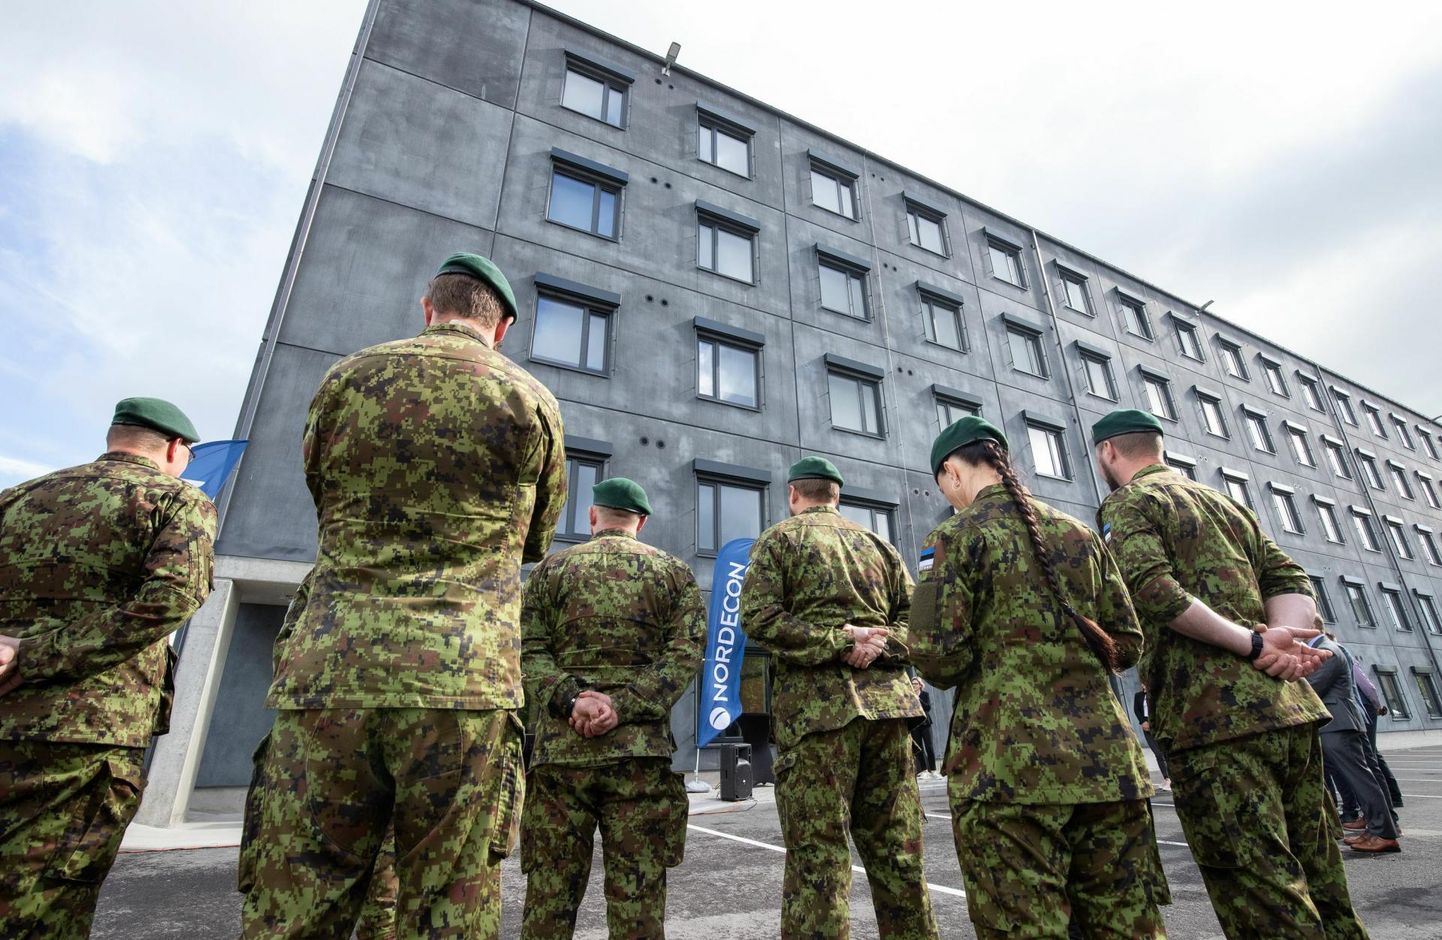 Tegevväelaste uue kasarmu avamine 2021. aasta juunis Tapa linnakus. Viimastel aastatel ongi kaitseväe taristuinvesteeringutest läinud suur osa Tapa linnaku arendamisse, nüüd on järjekord jõudnud Põhja- ja Lääne-Eestisse.